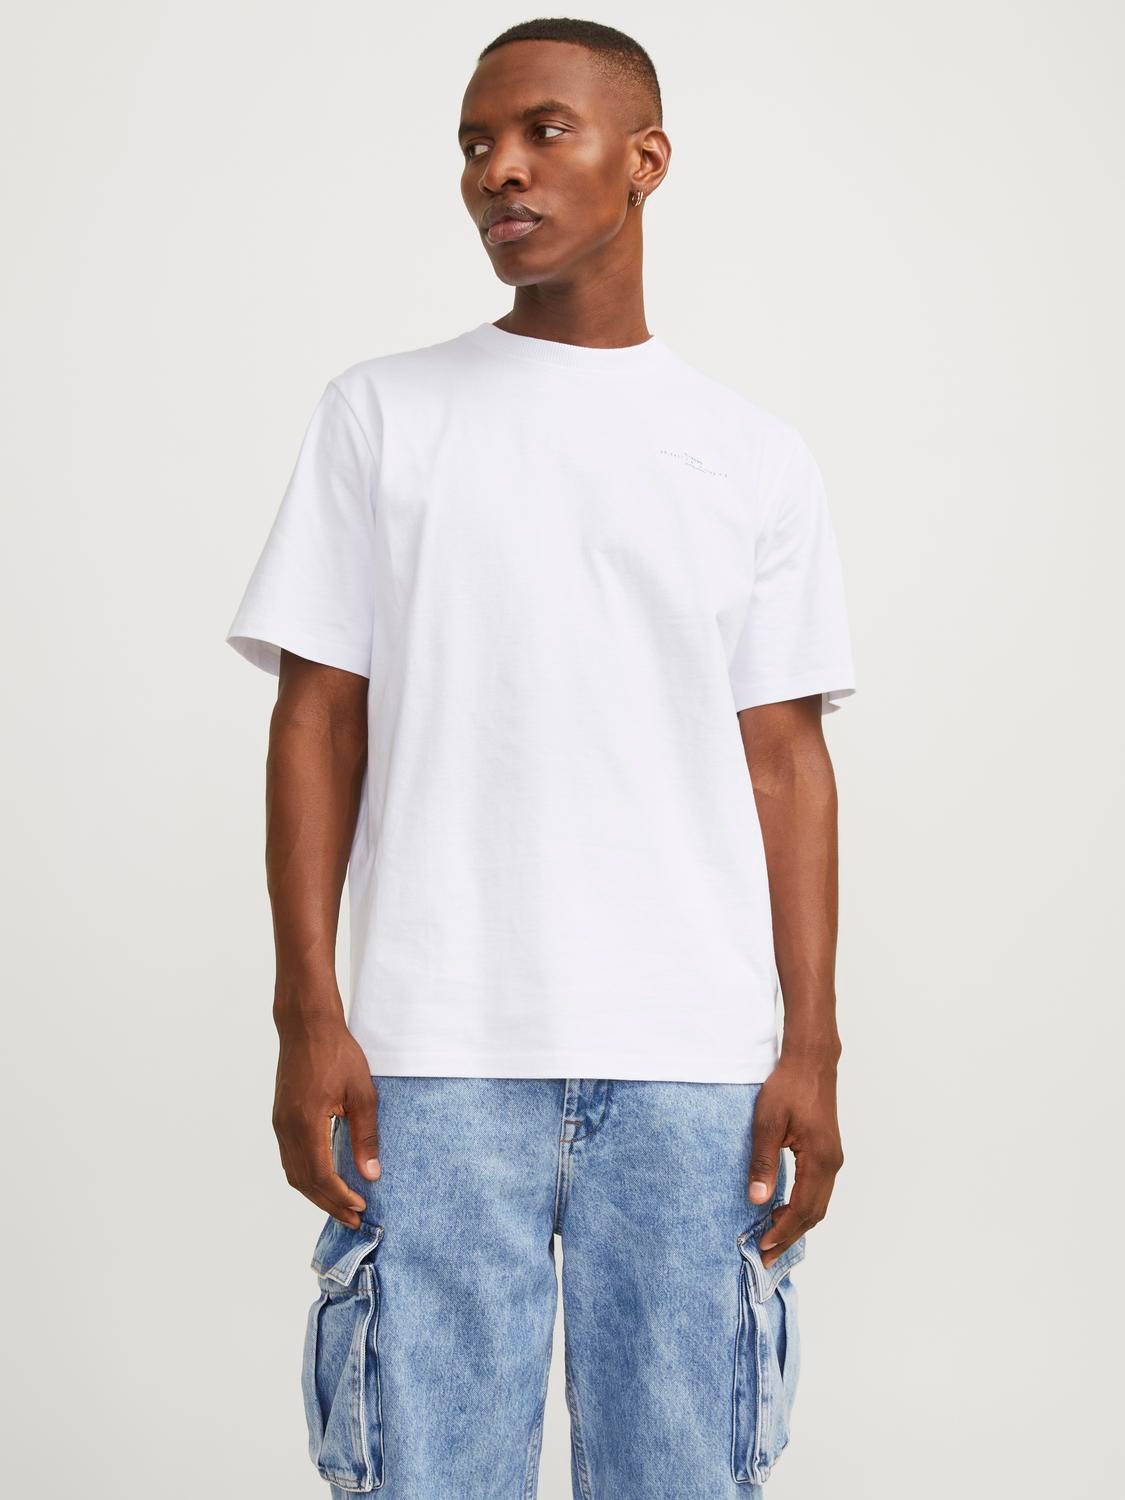 Jack & Jones Gedruckt Rundhals T-shirt -White - 12256407